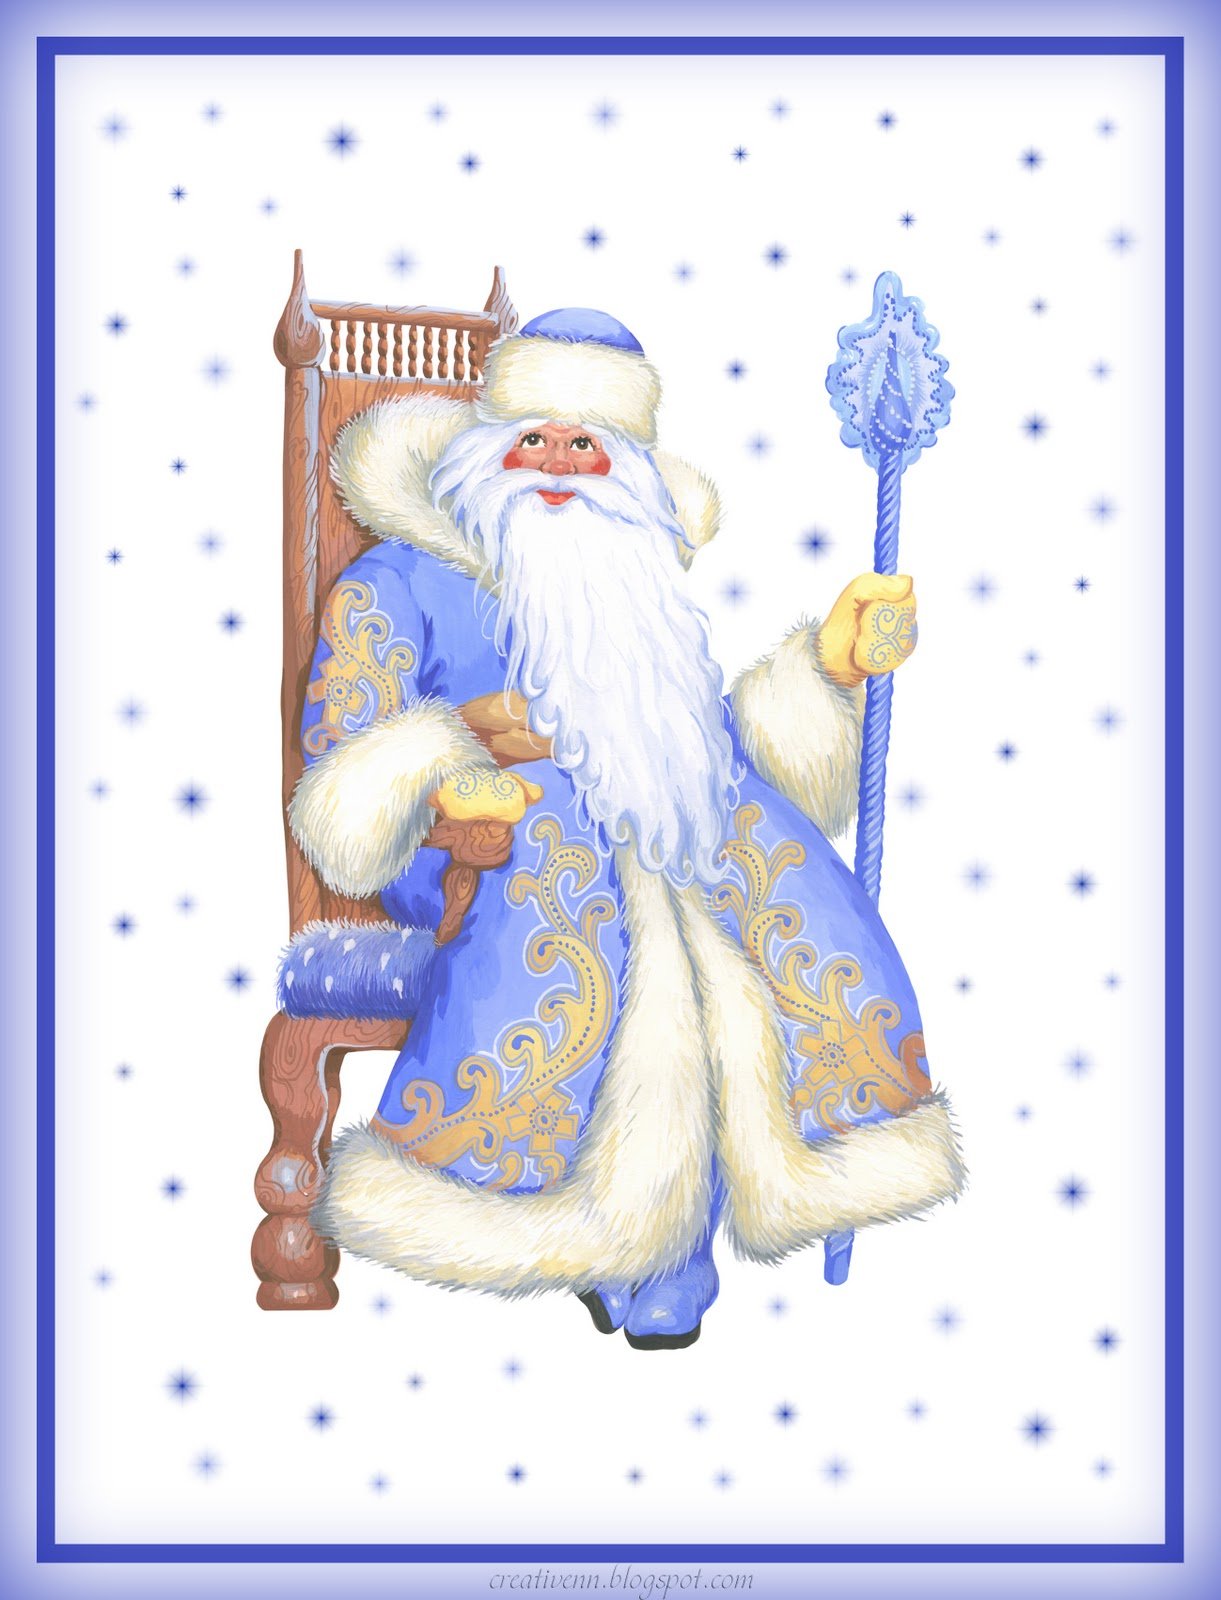 Иллюстрация синего Деда Мороза для детей